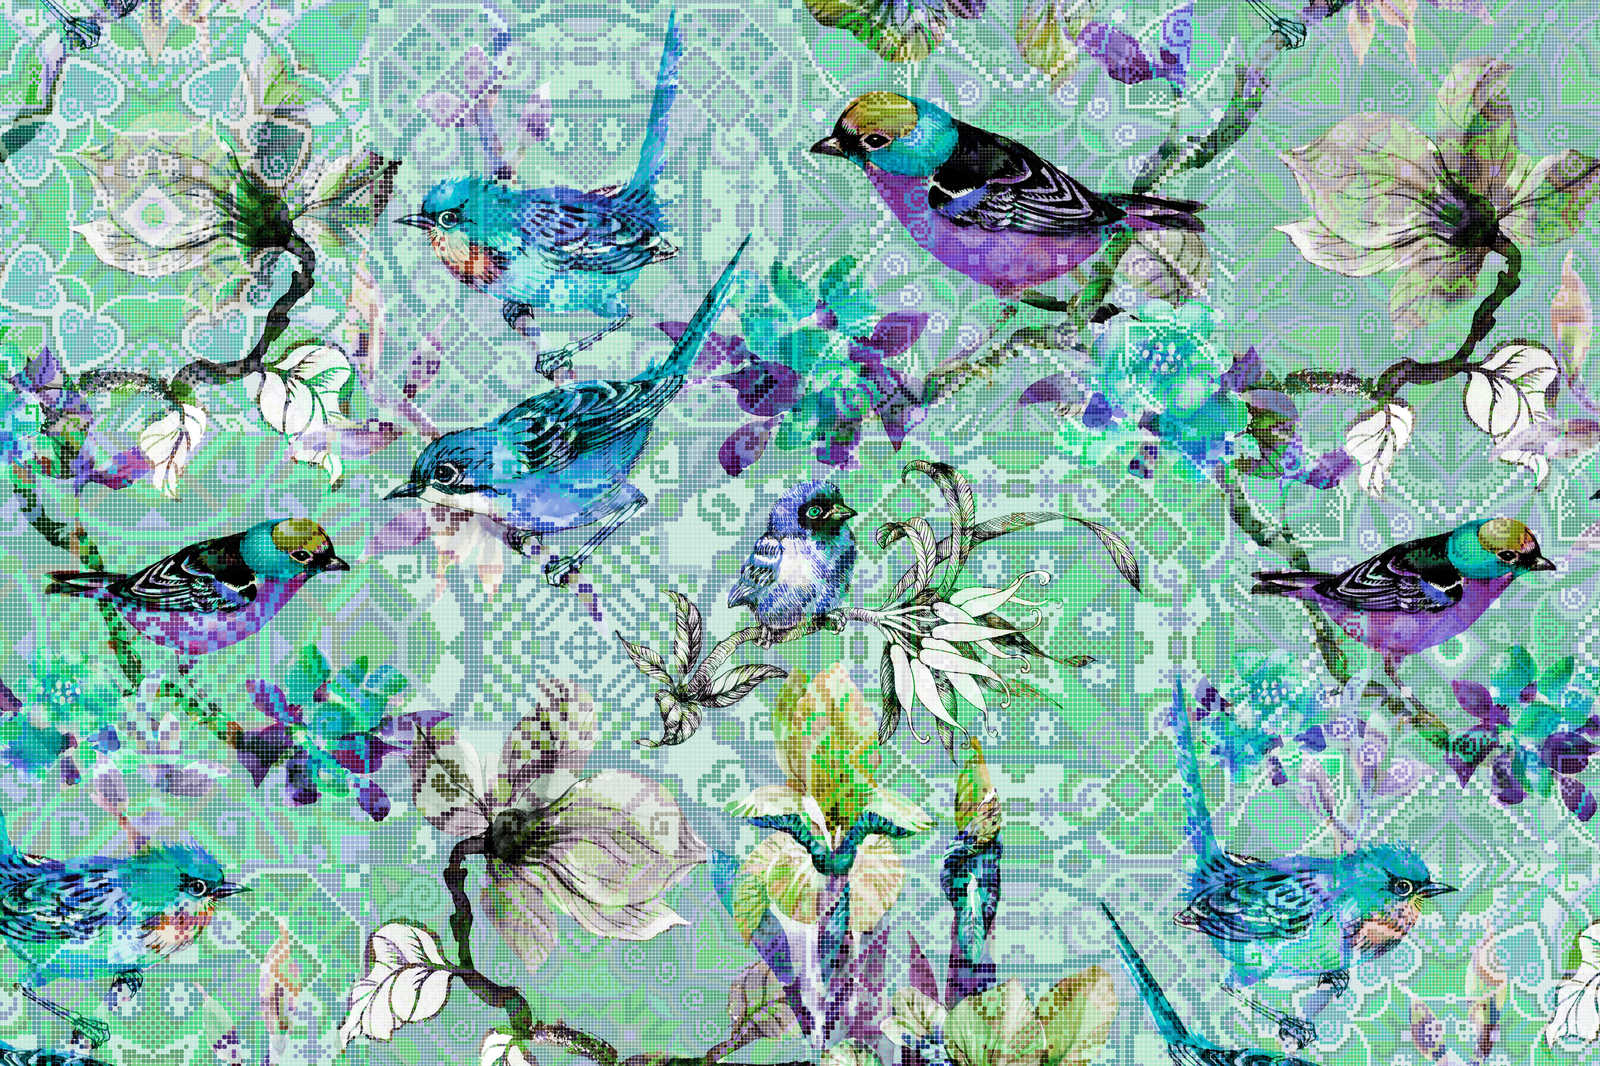             Oiseau toile avec motif mosaïque | mosaic birds 3 - 0,90 m x 0,60 m
        